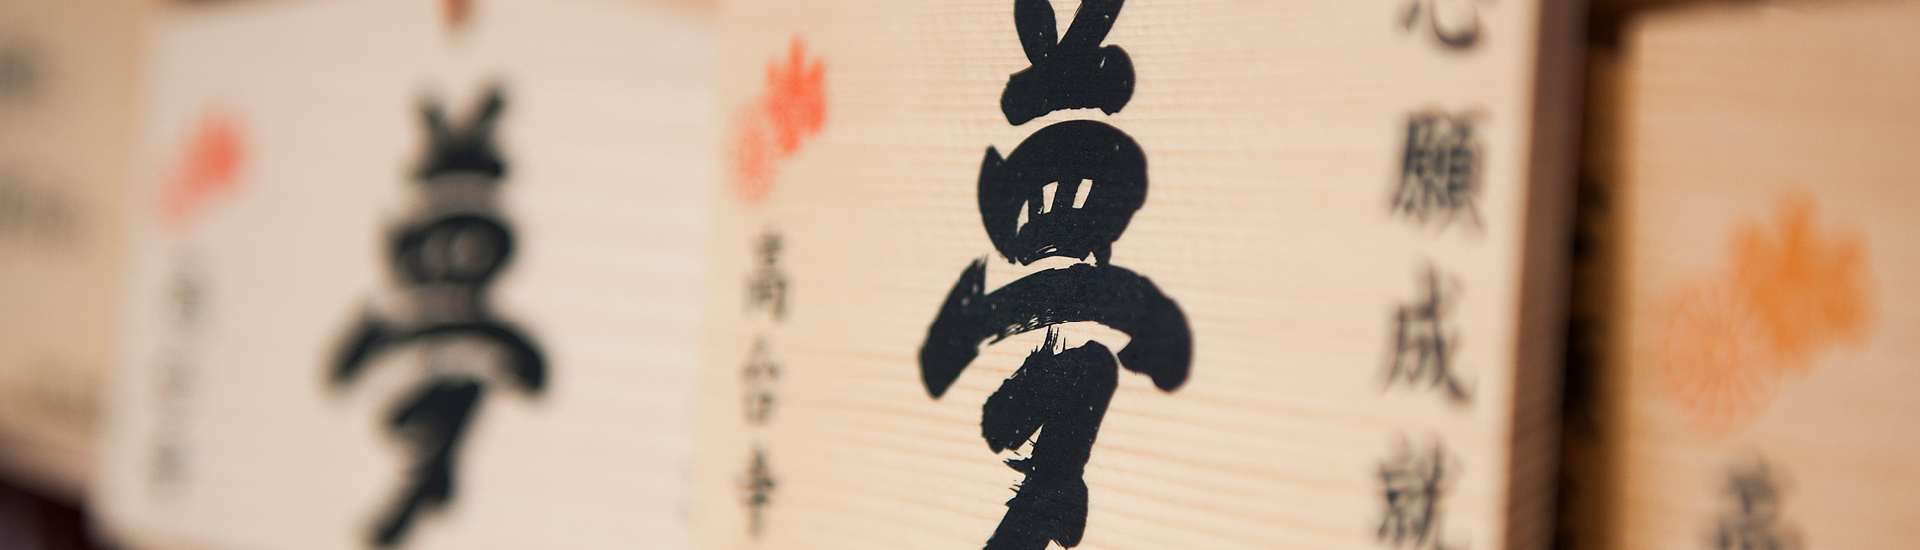 Ema: as Oferendas Feitas em Santuários Xintoístas. Na foto, detalhe de placas de madeira com ideogramas japoneses escritos em tinta preta.